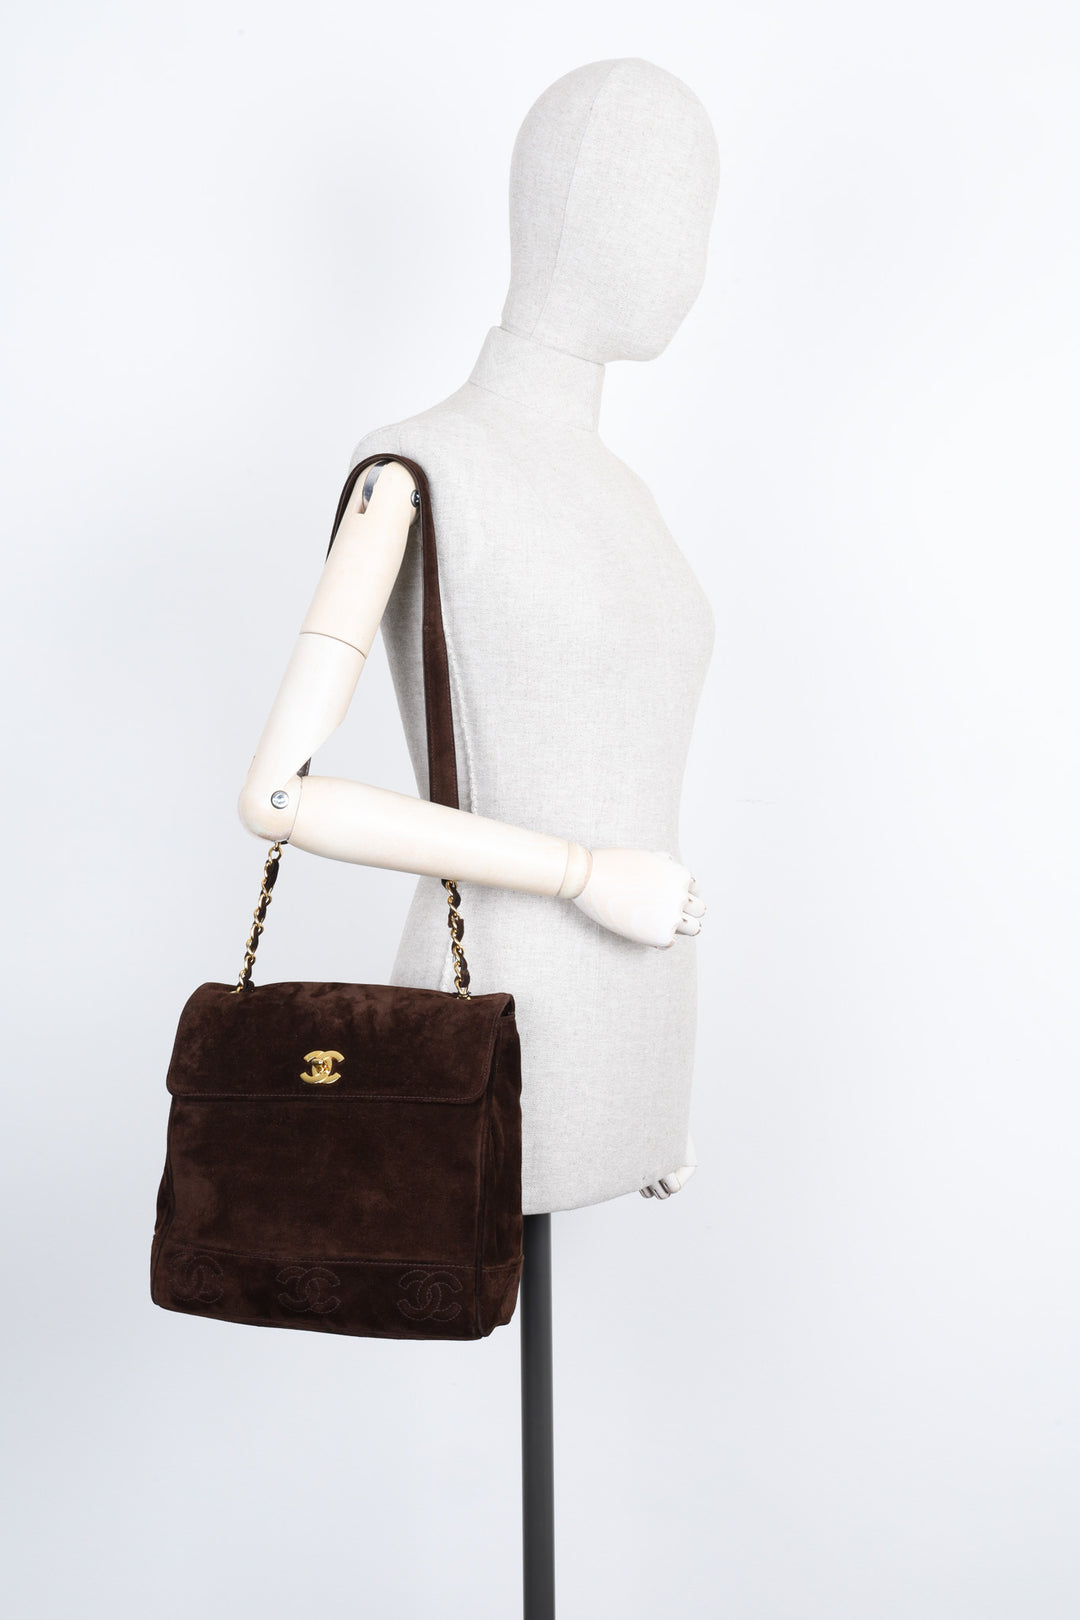 CHANEL Vintage Flap Bag Suede Brown